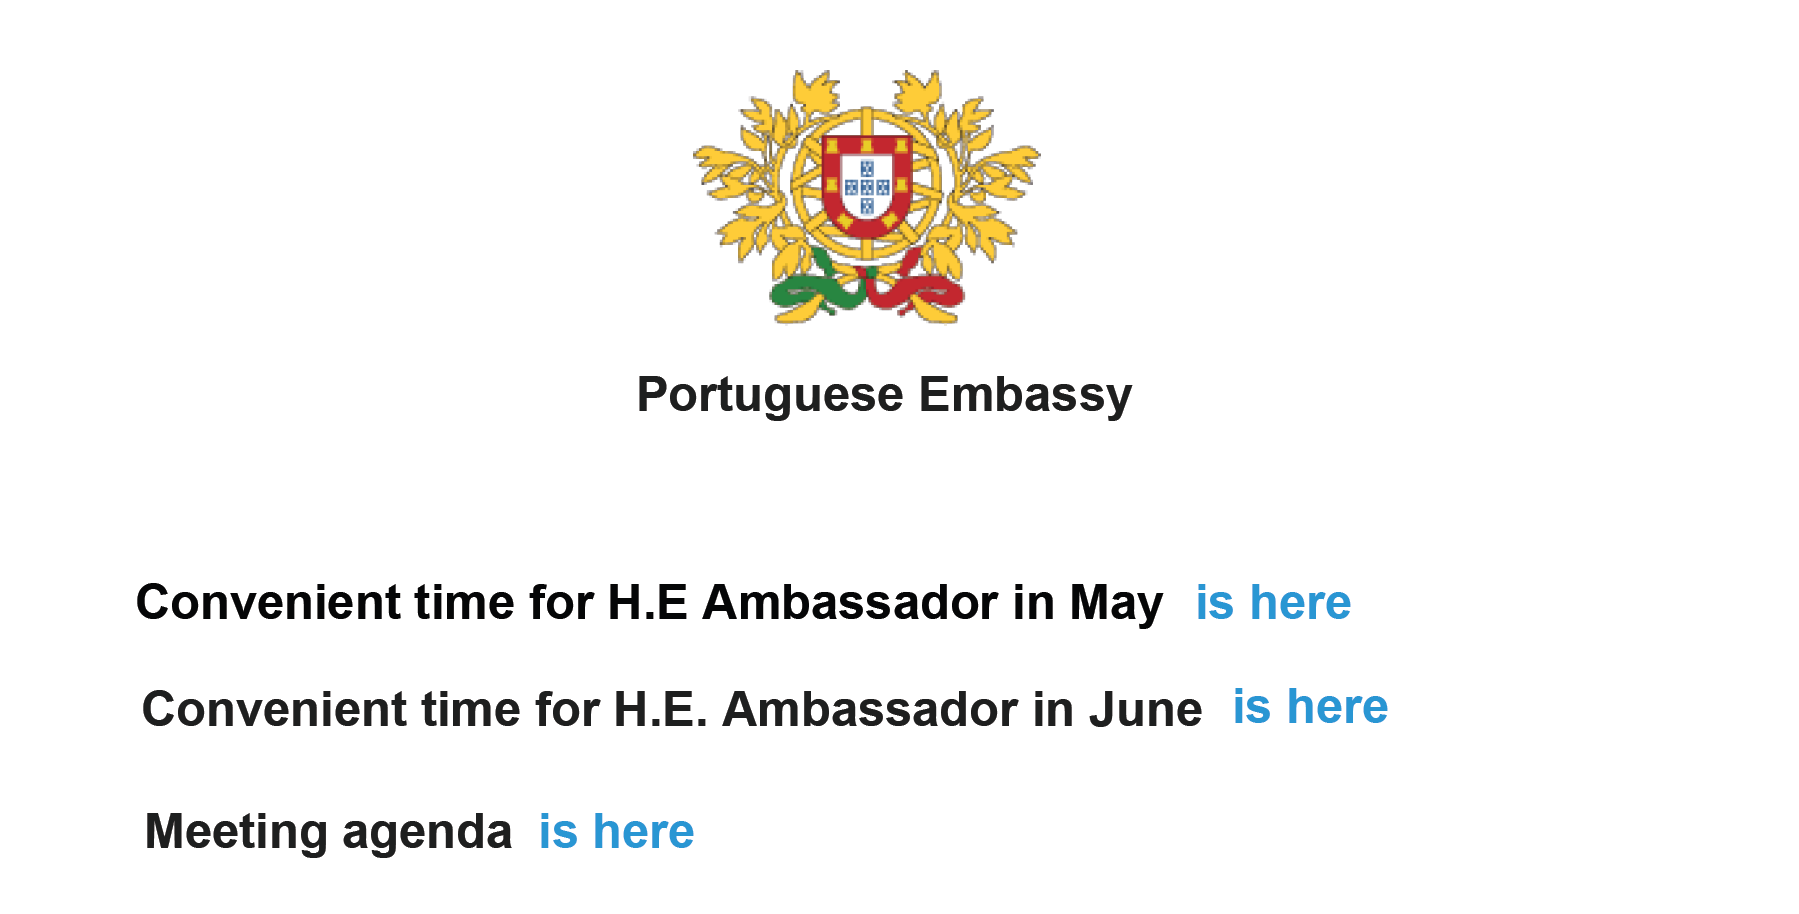 ポルトガル大使館のおとりファイル表示されている電子メールは、ポルトガル大使との来たる会合のスケジュールへのリンクを含むように見せかけています。